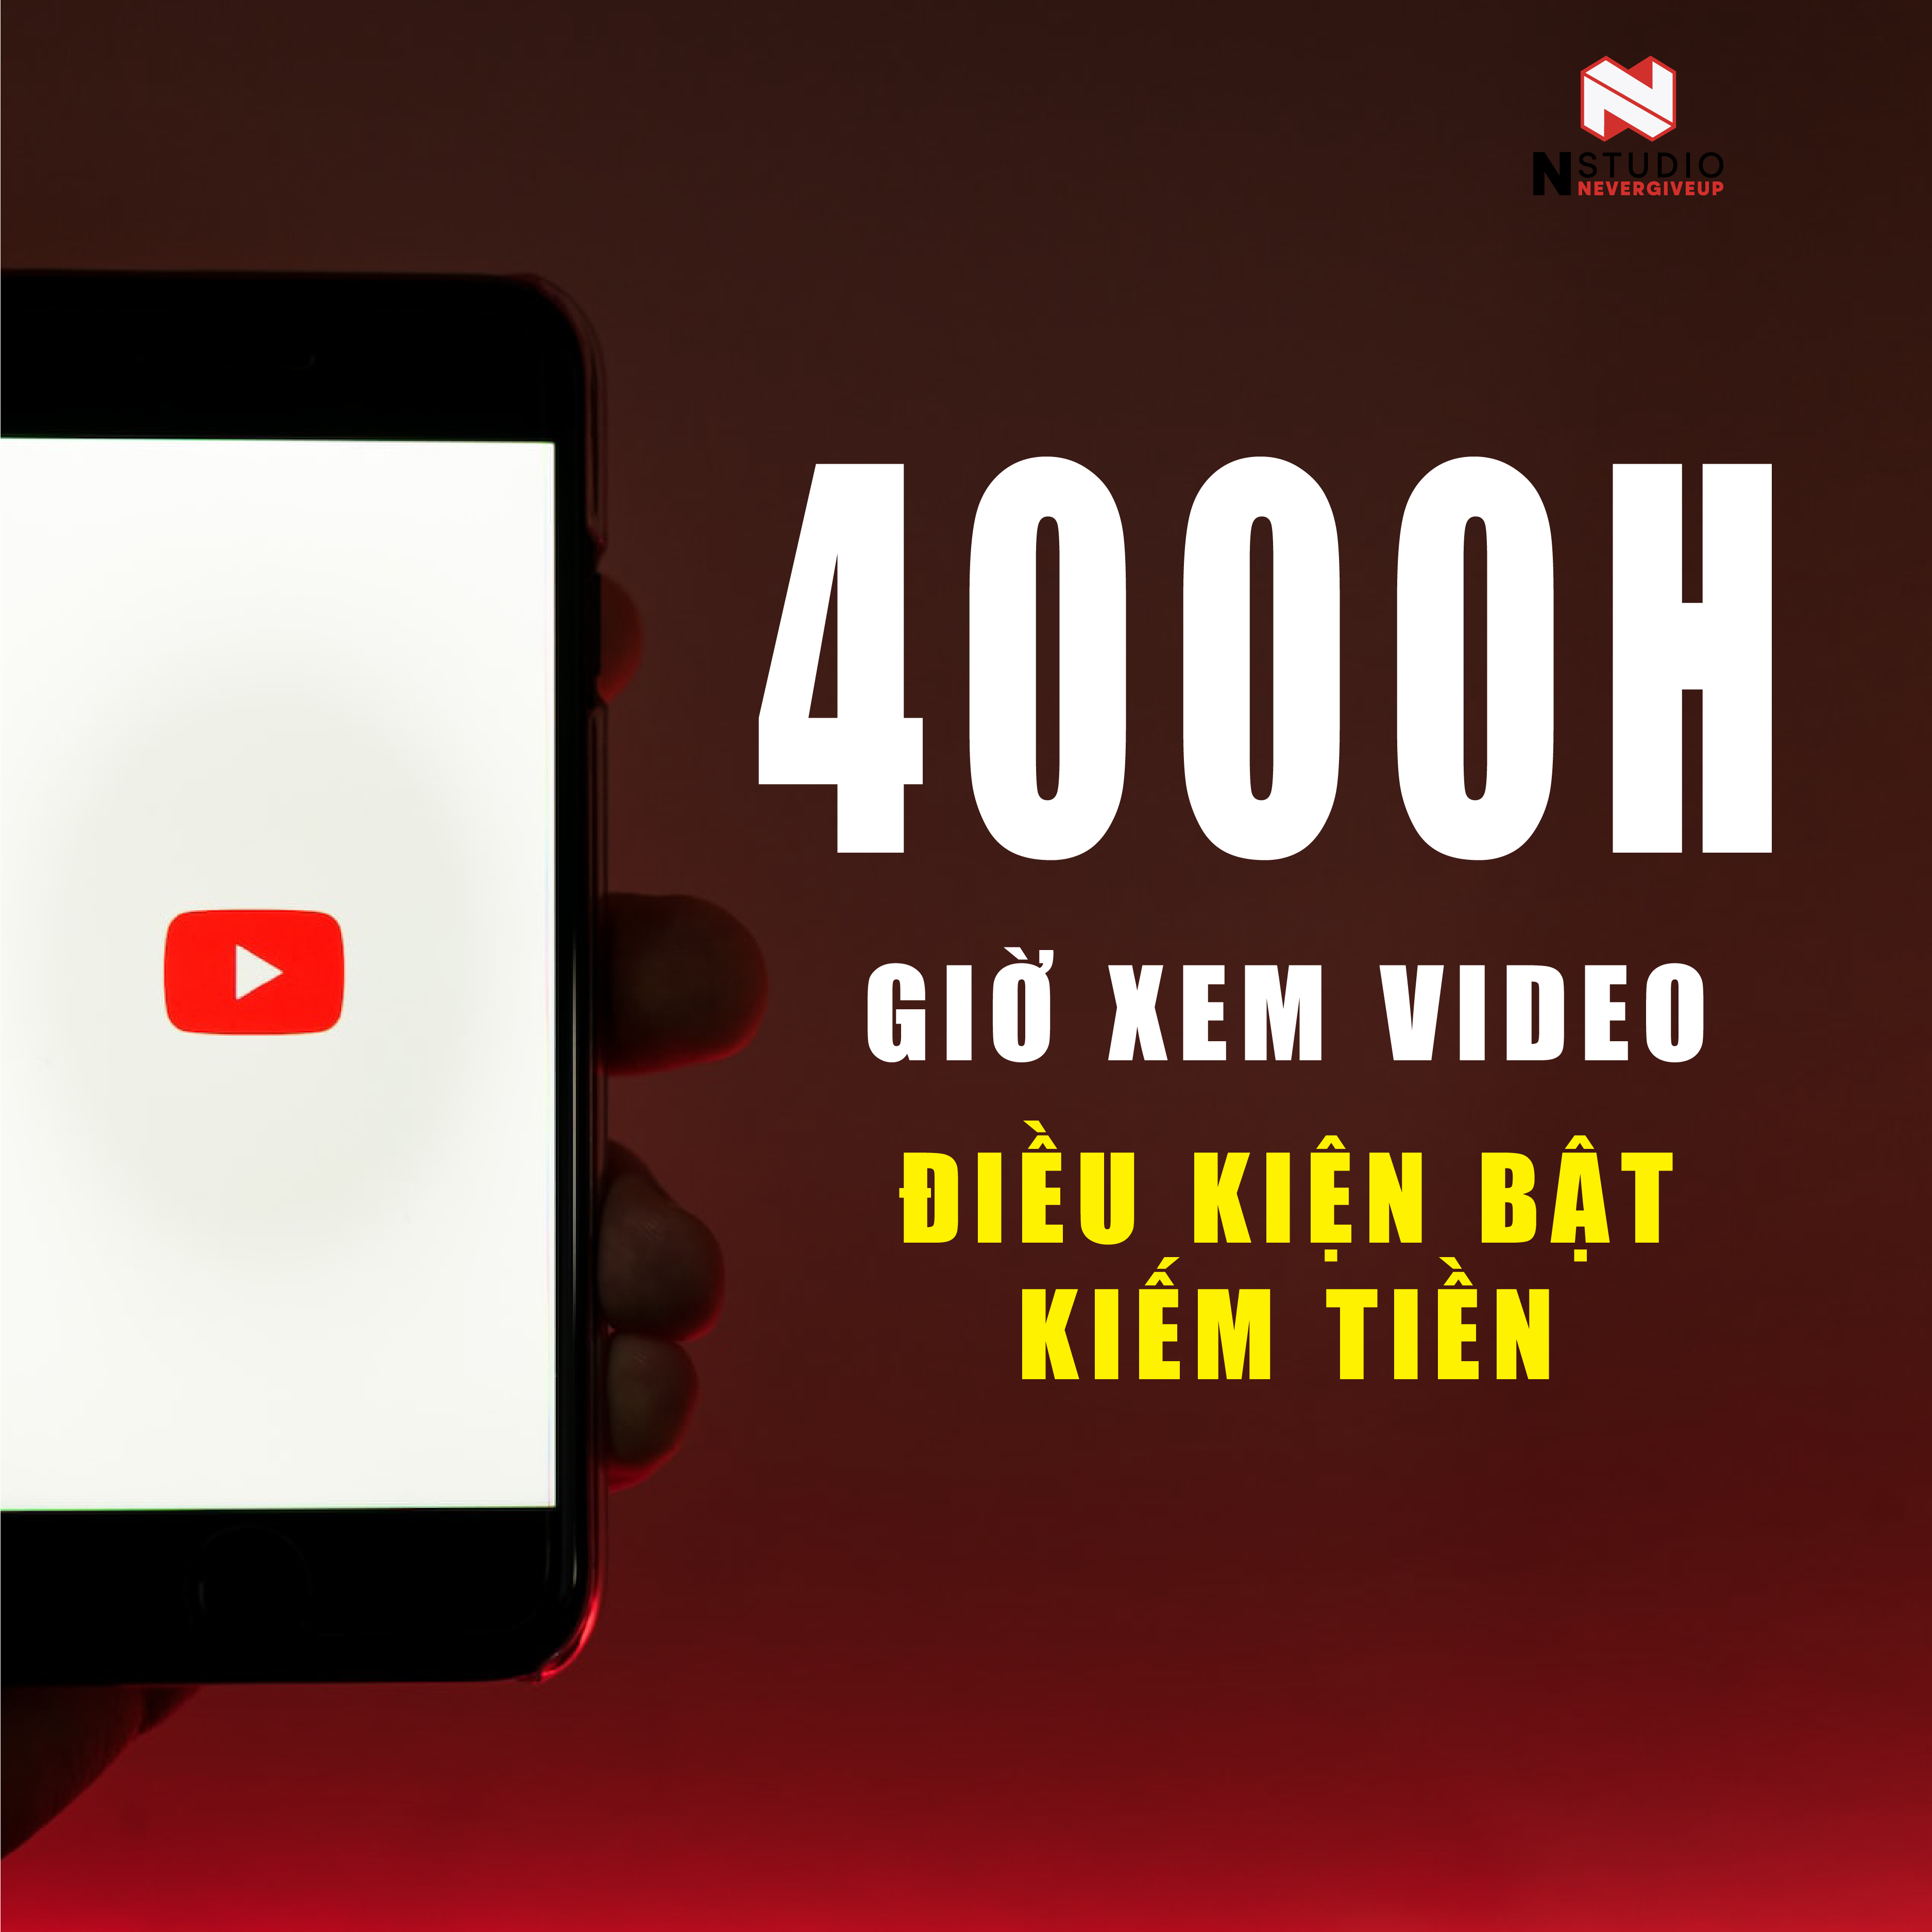 4000 Giờ Xem Cho Kênh Youtube Để Bật Kiếm Tiền